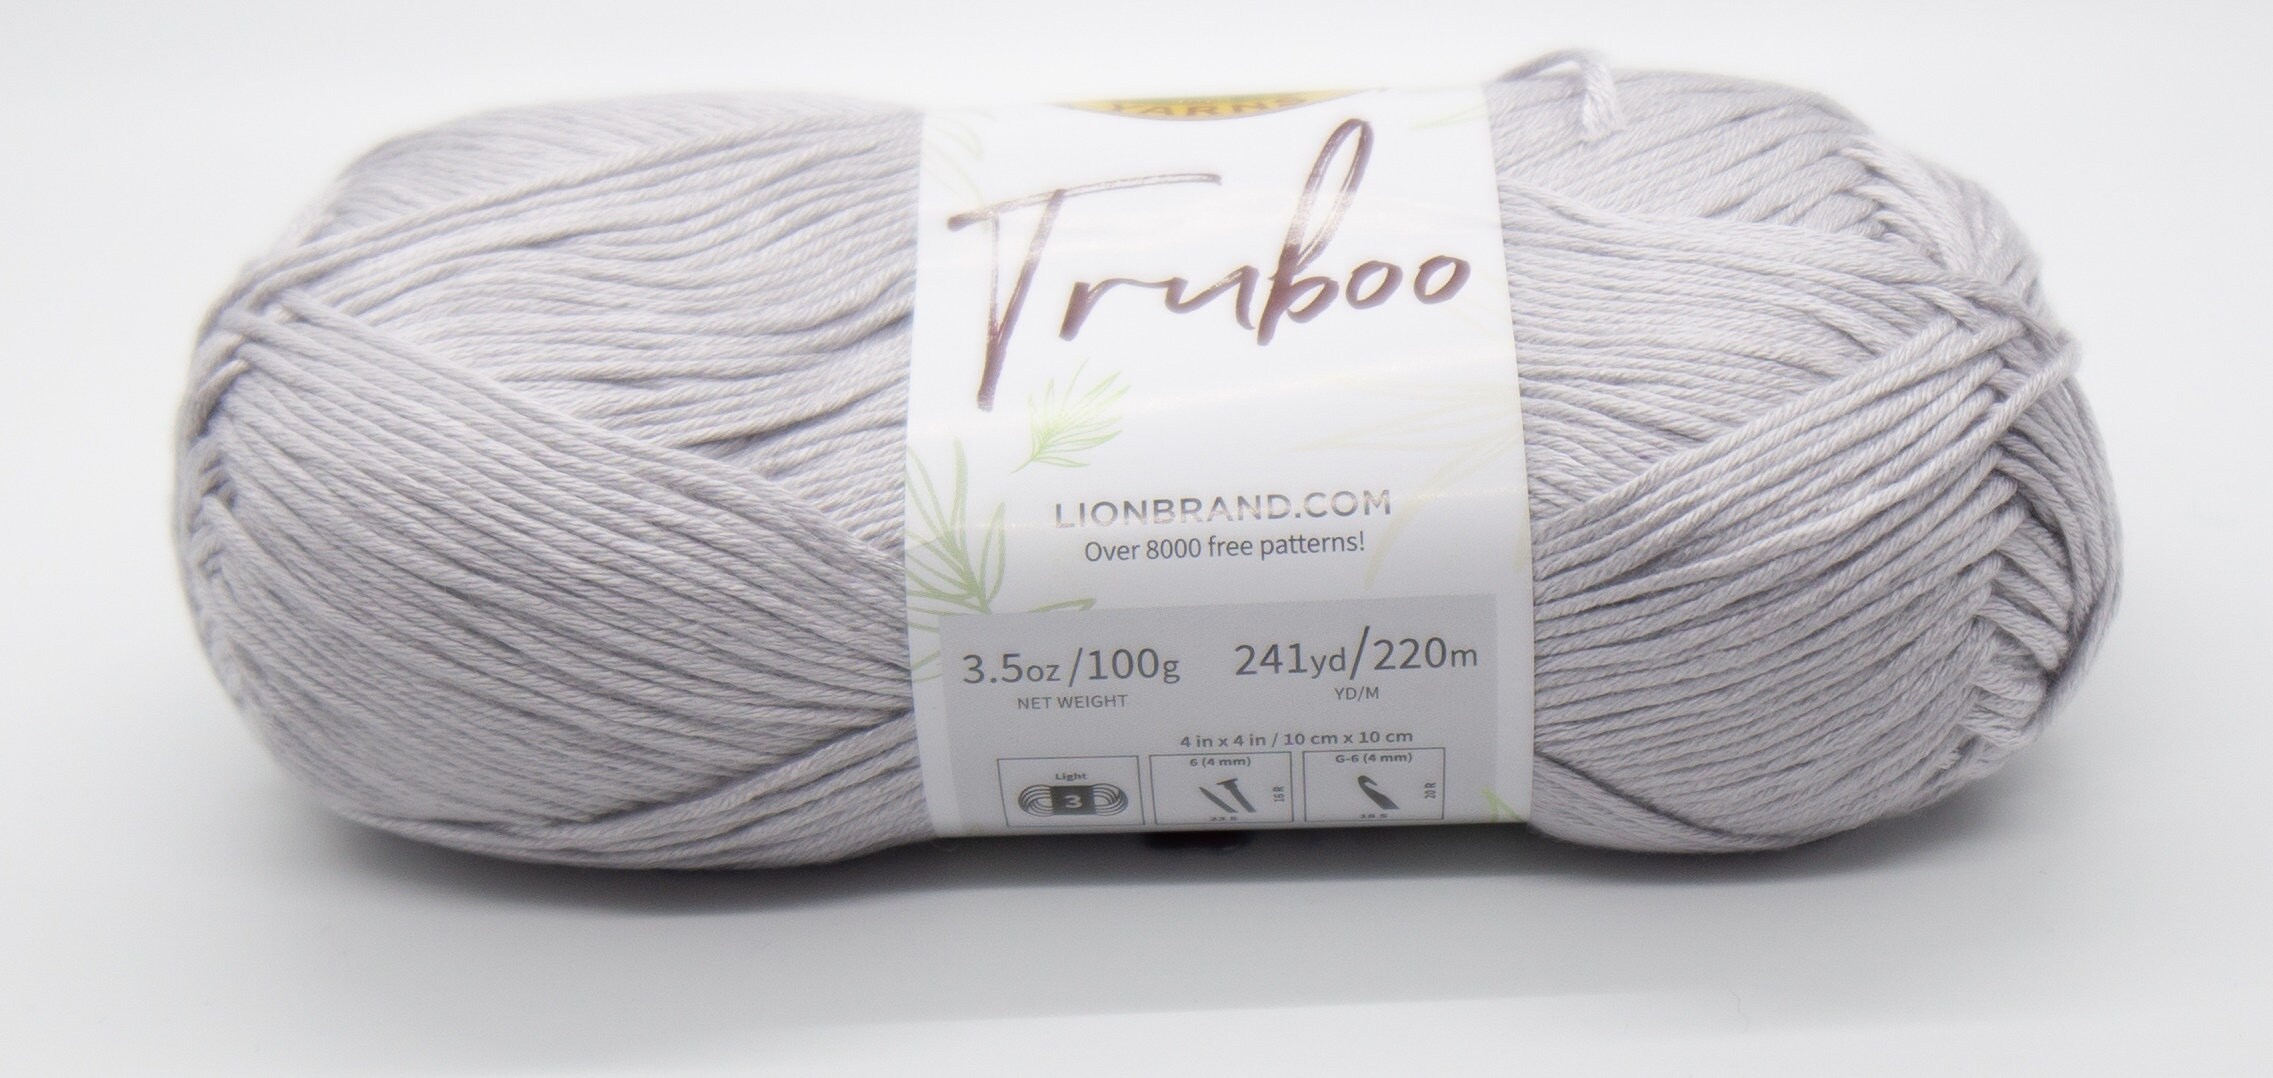 Lion Brand Truboo Yarn-Silver